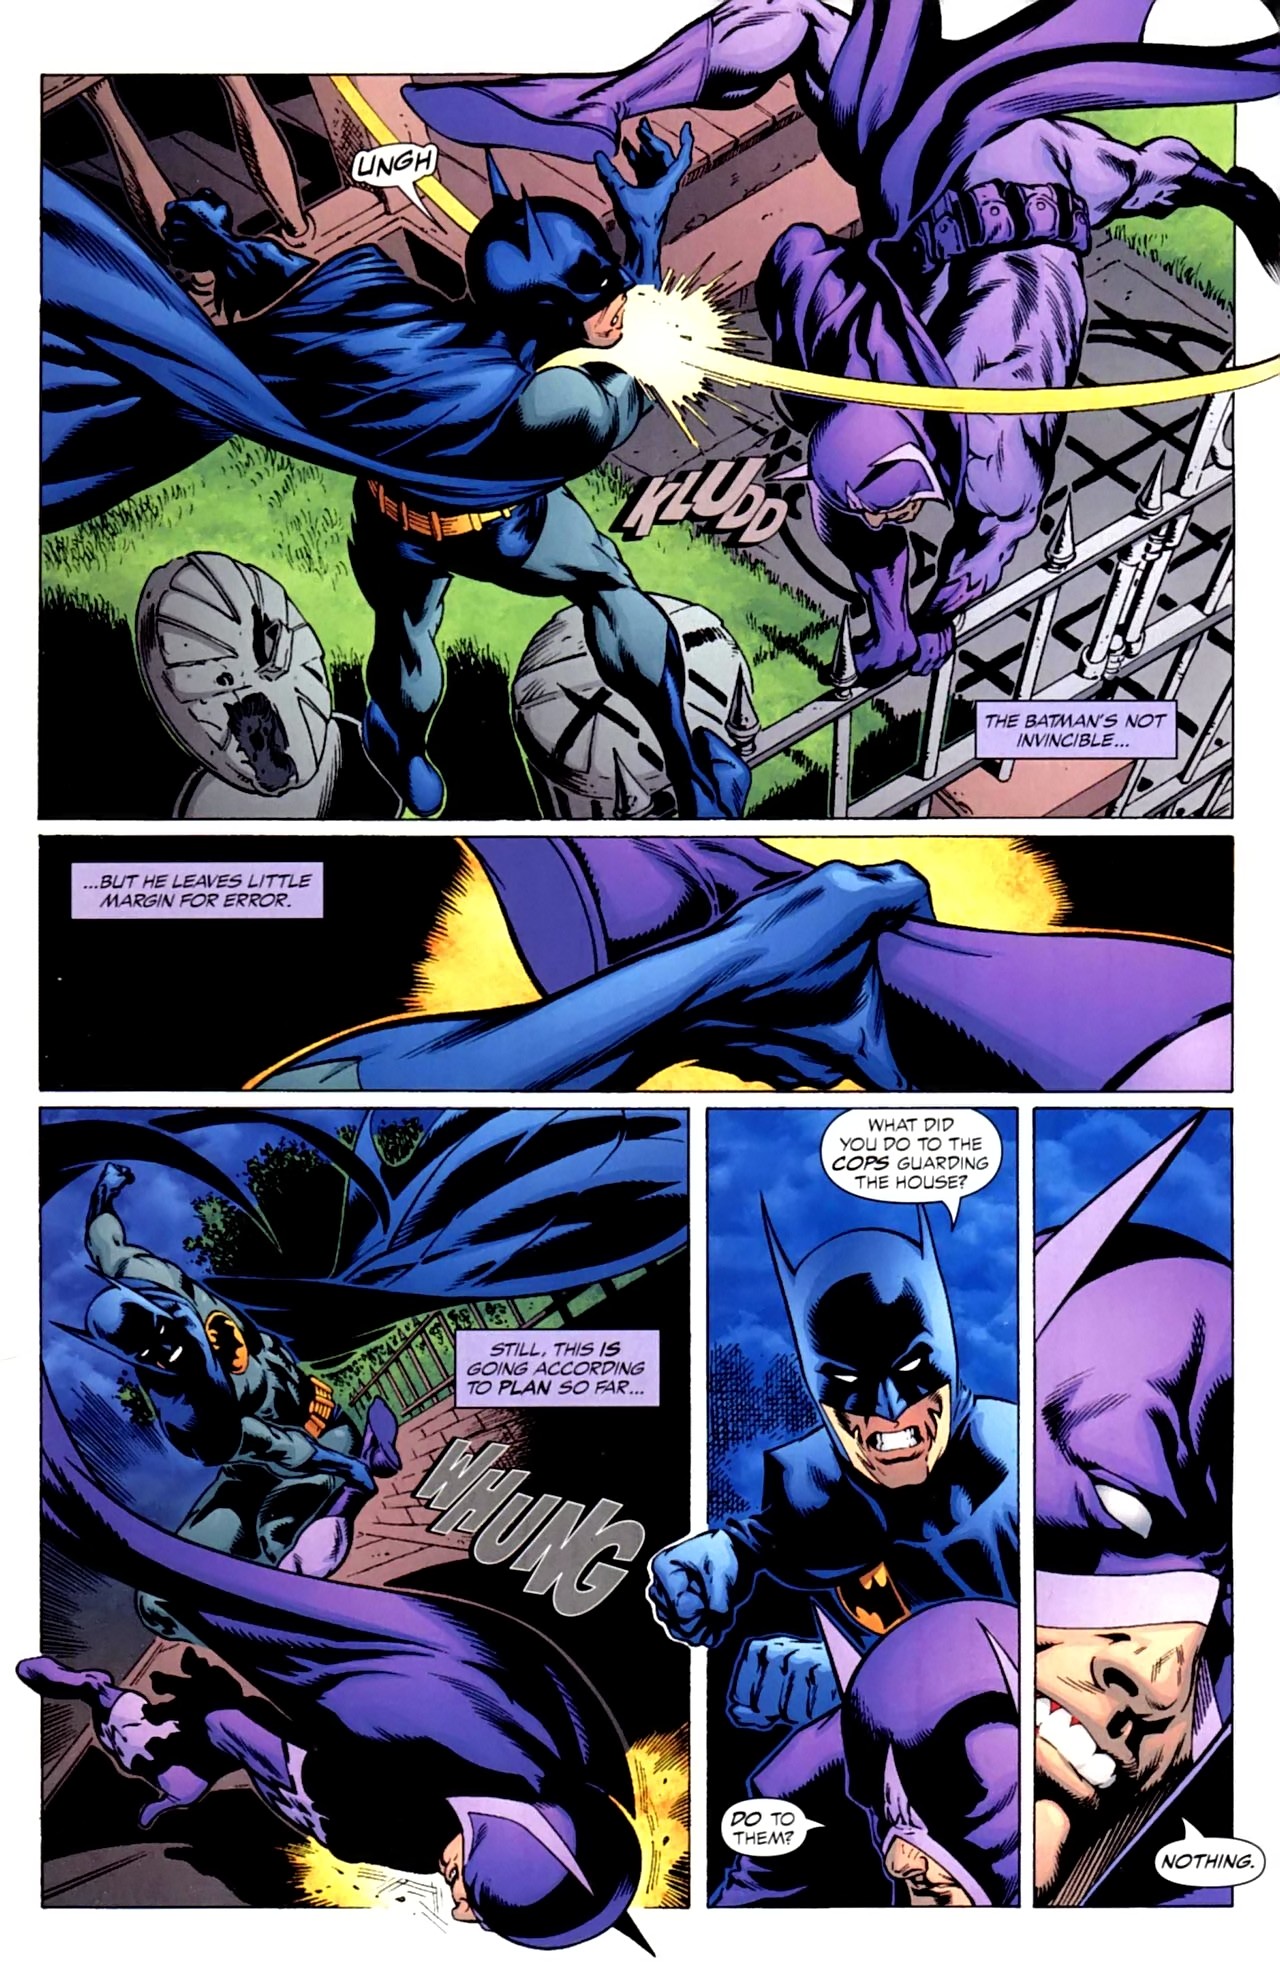 DC Comics Fight Scene Pt. 39 by Racer5678 on DeviantArt